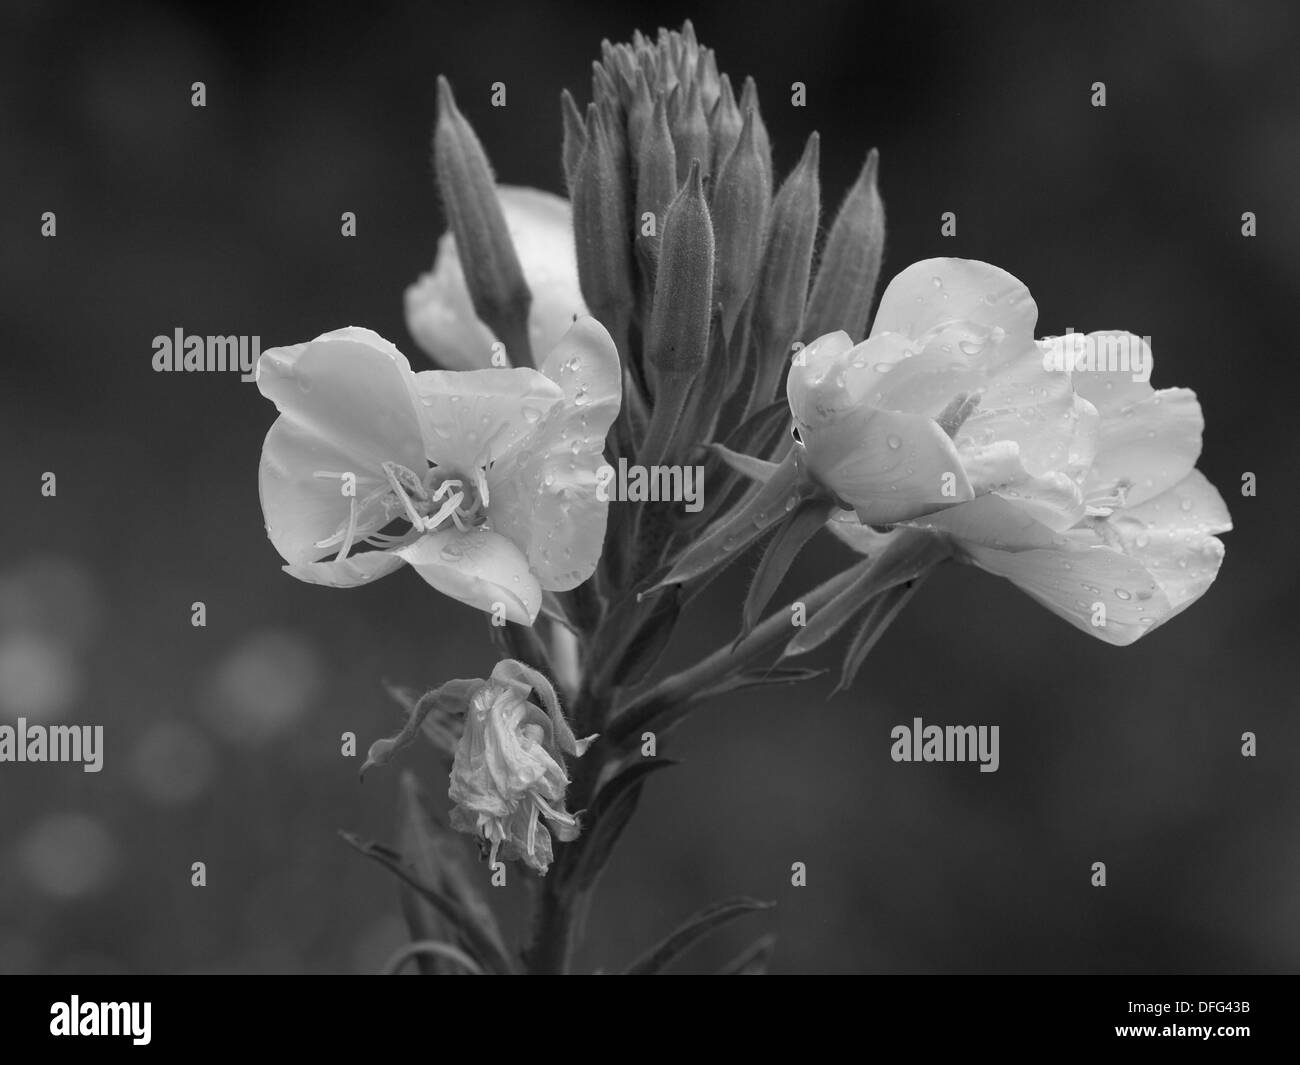 Enagra in bianco e nero / Oenothera biennis / Gewöhnliche Nachtkerze schwarz - weiß Foto Stock